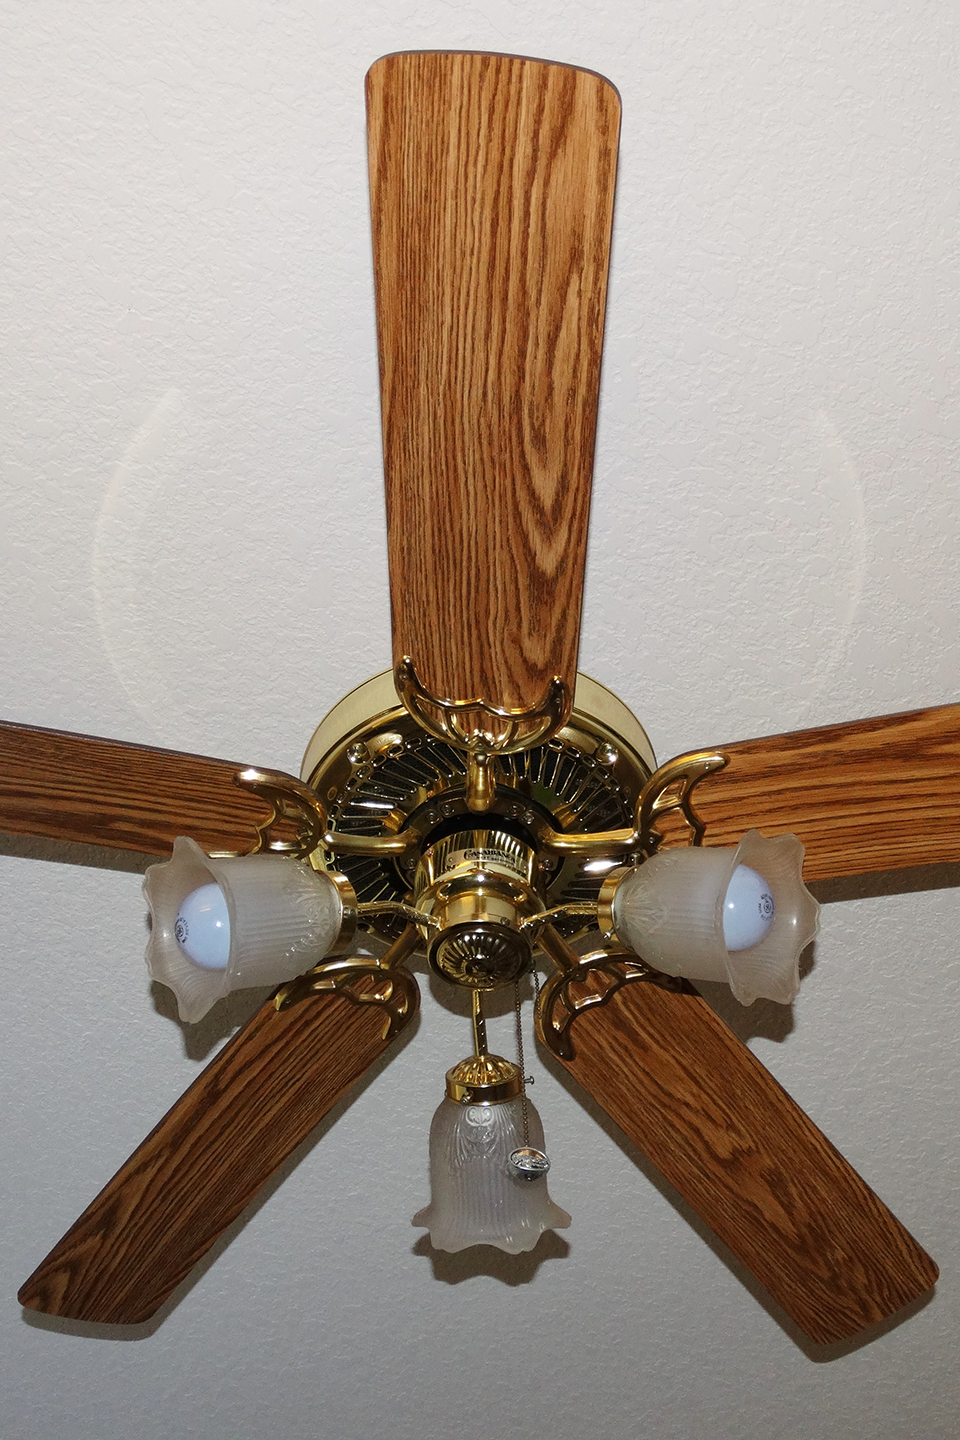 Wood ceiling fan blades